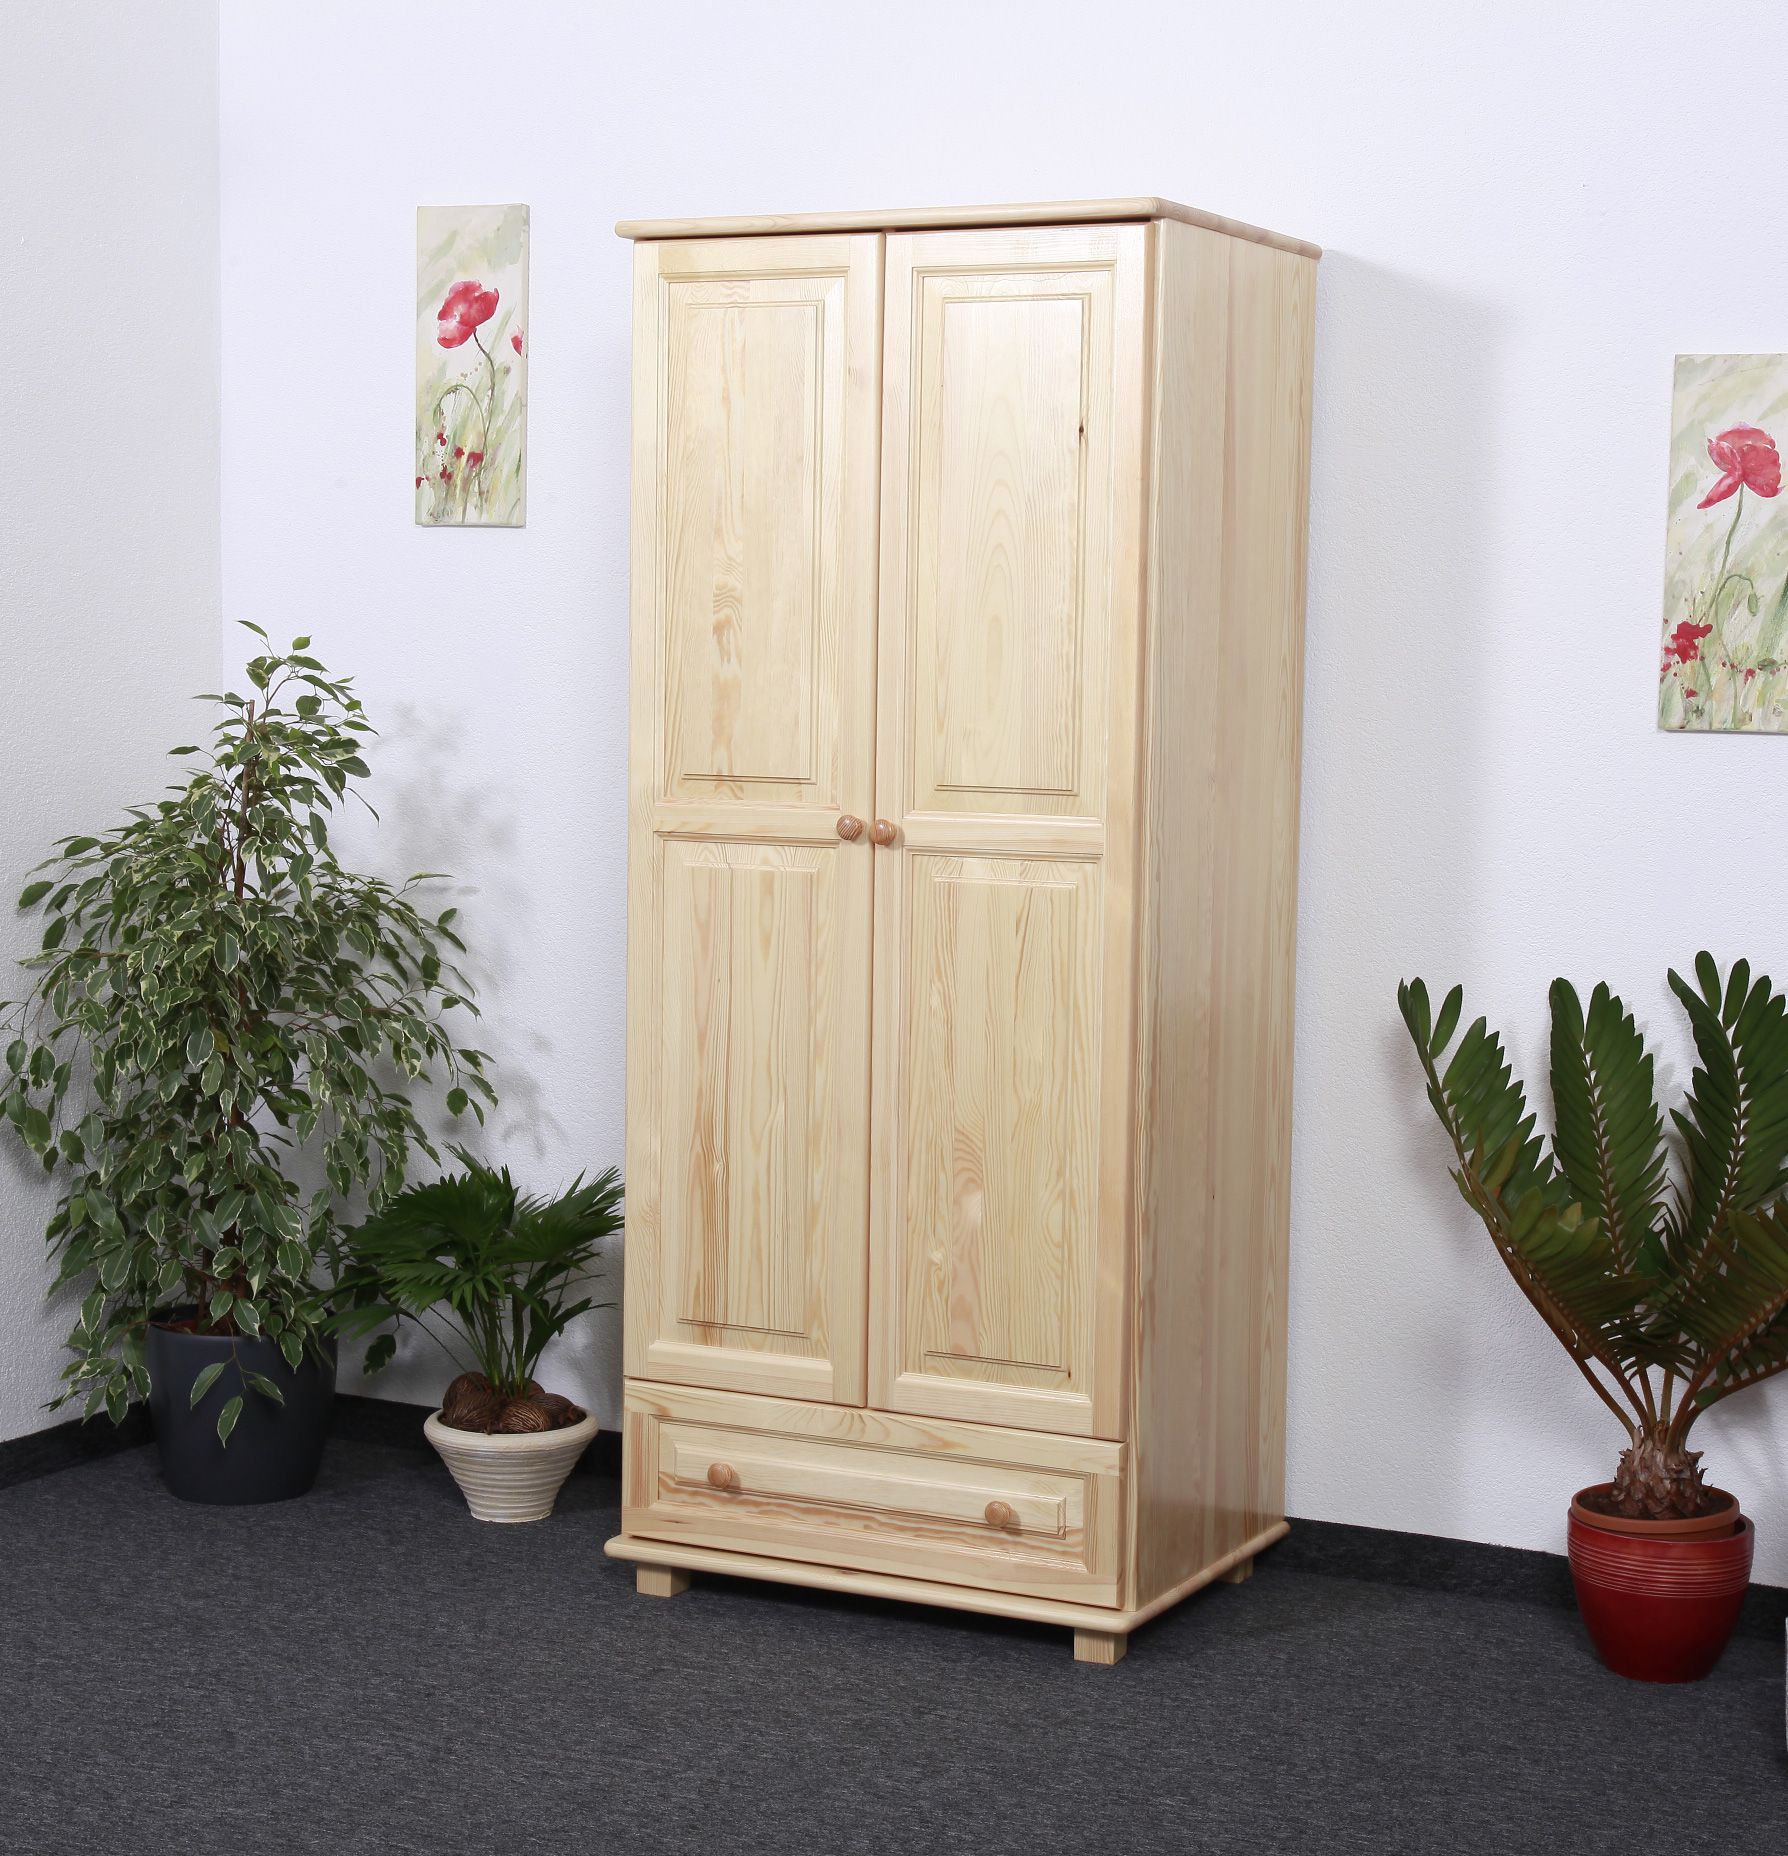 Armoire en bois de pin massif, naturel 007 - Dimensions 190 x 90 x 60 cm (H